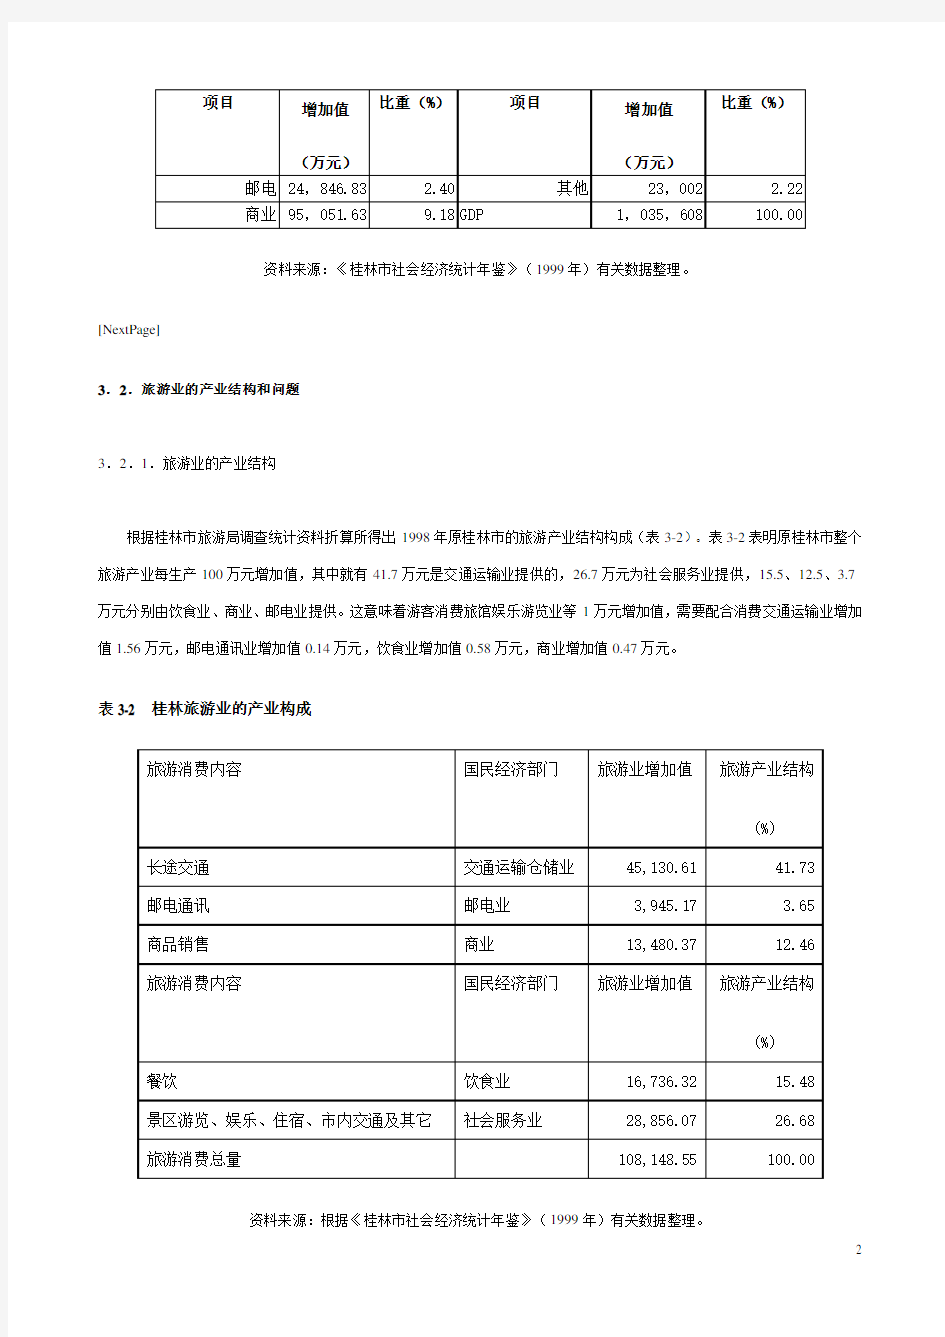 桂林旅游业的产业结构现状评估资料